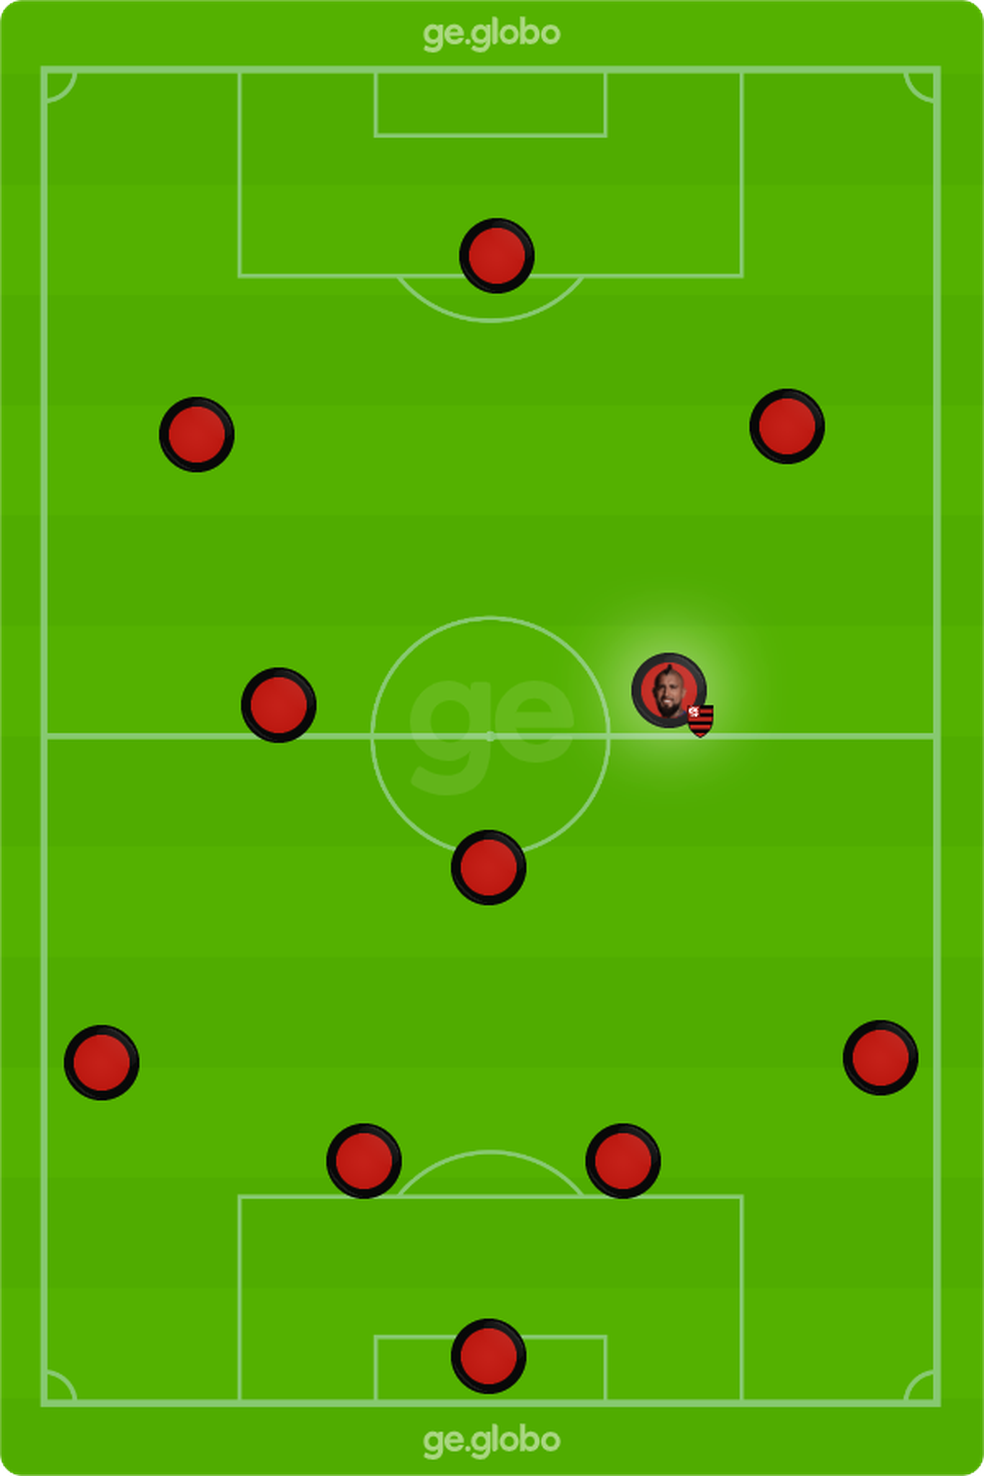 Desenho do time do Flamengo com a chegada de Vidal — Foto: ge